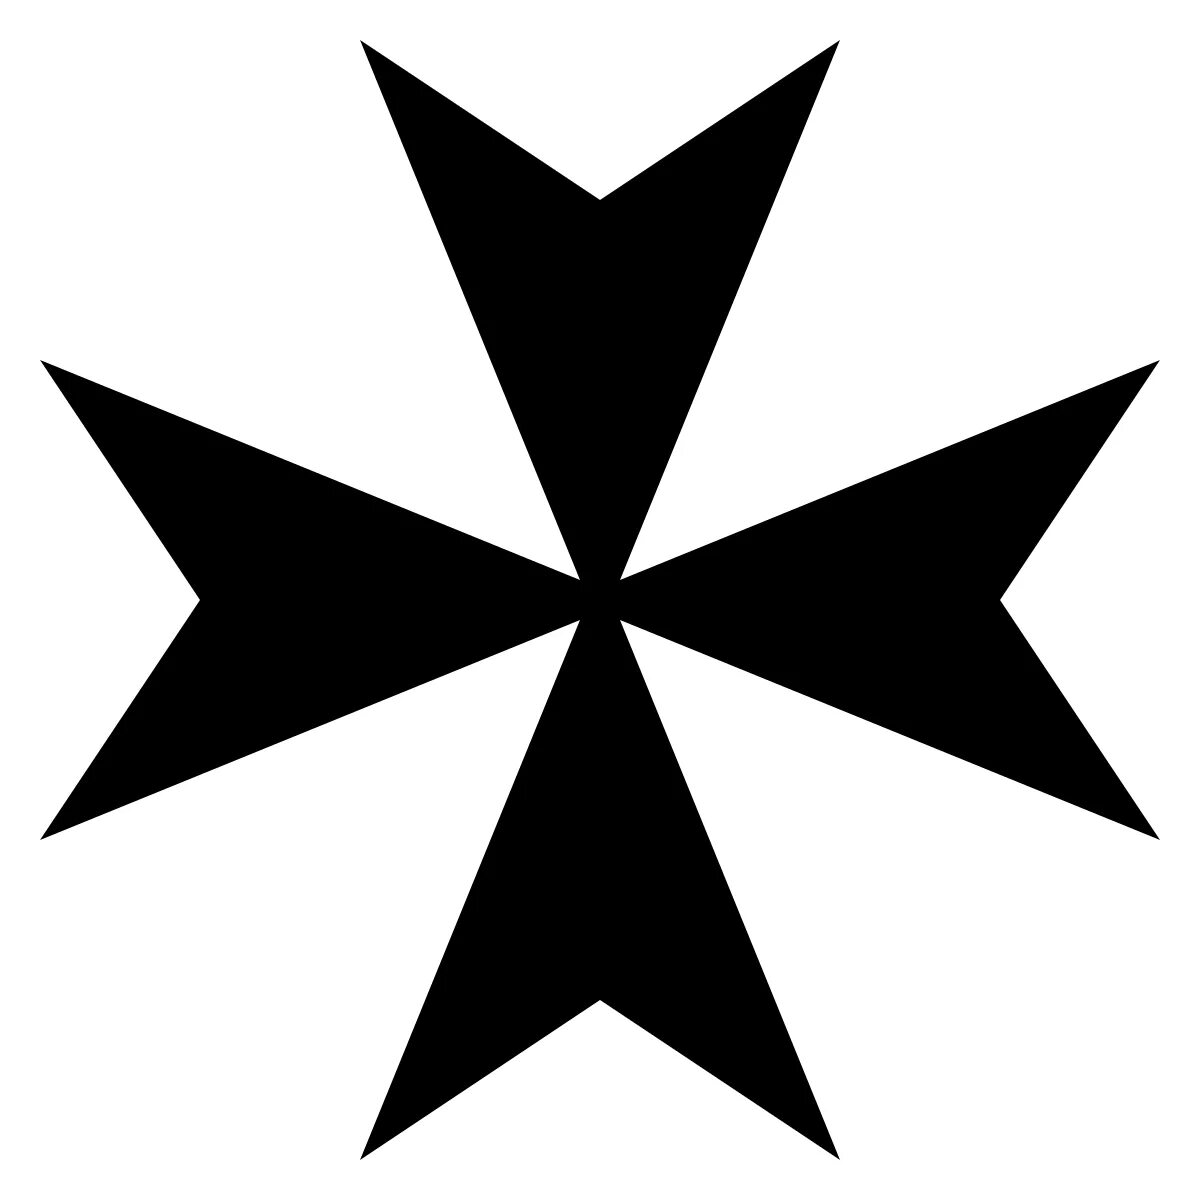 Мальтийский крест это. Крест Мальтийского ордена госпитальеров. Мальтийский крест – Maltese Cross. Мальтийский – восьмиконечный крест ордена тамплиеров. Крест Cross Pattee.